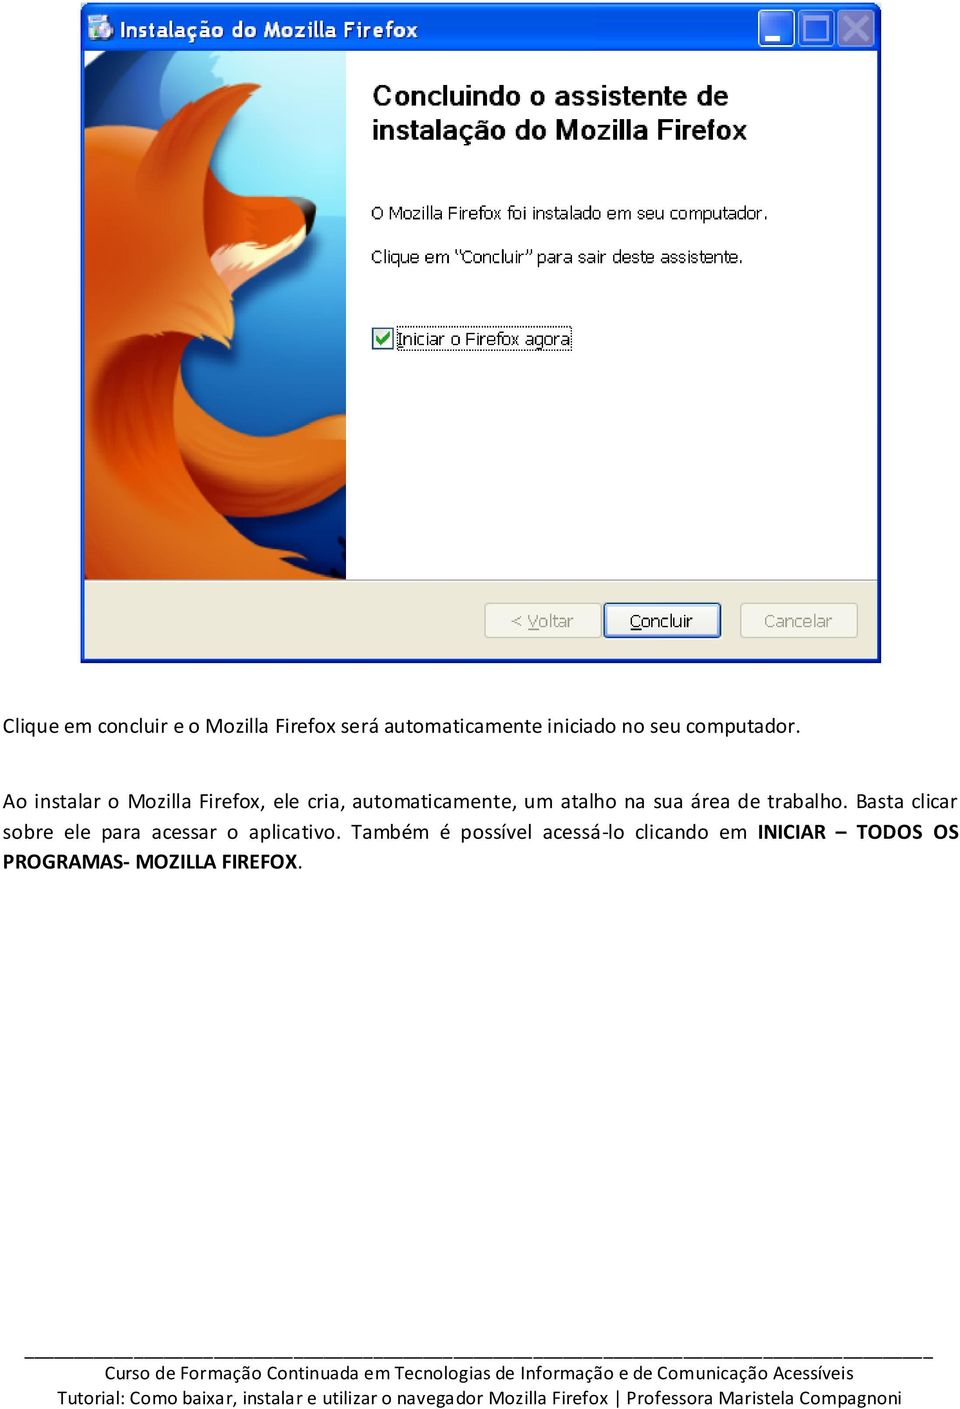 Ao instalar o Mozilla Firefox, ele cria, automaticamente, um atalho na sua